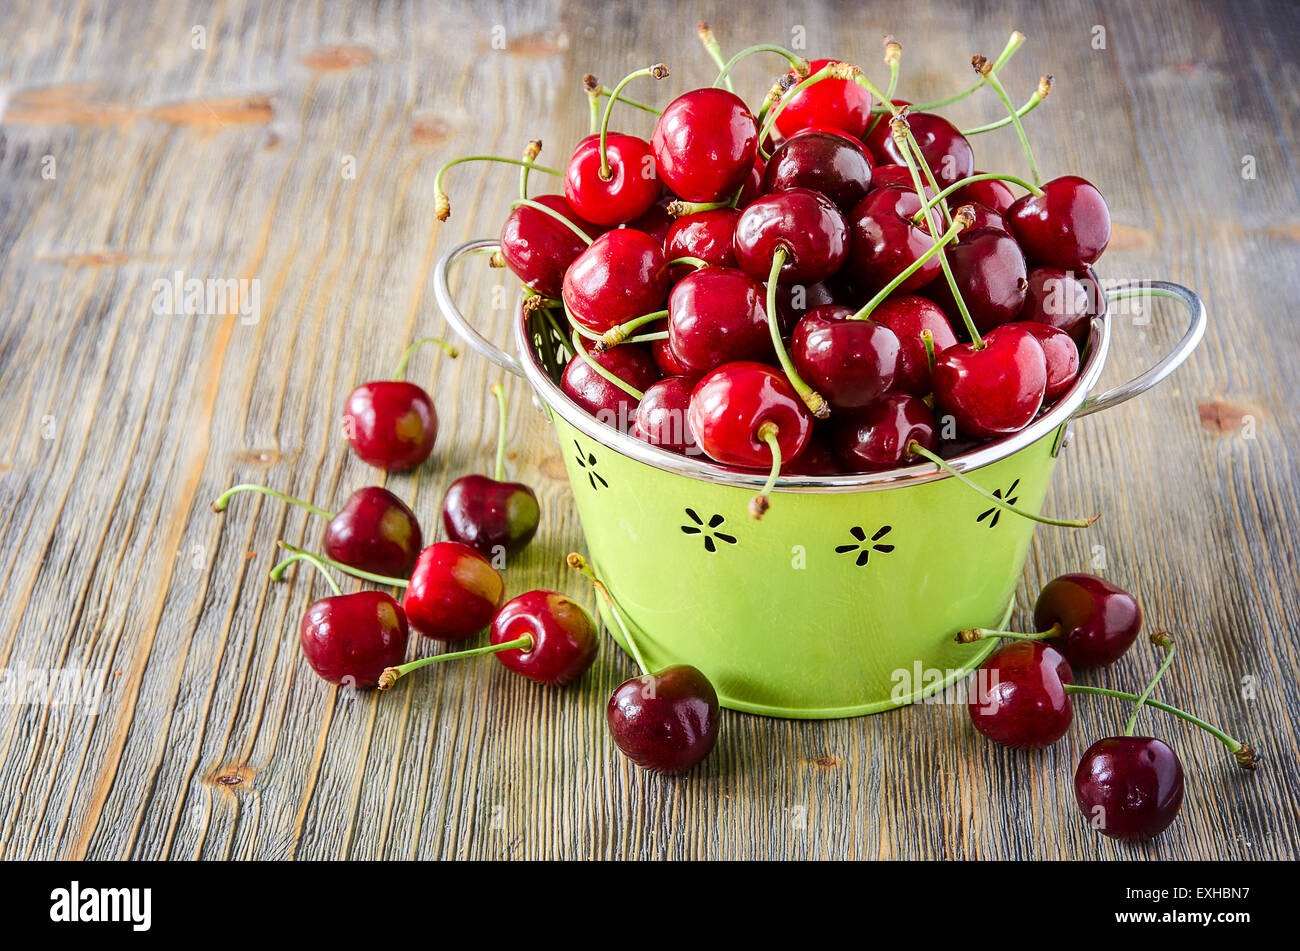 Sweet red ripe cherries in bowl, summer food, healthy berries Stock Photo